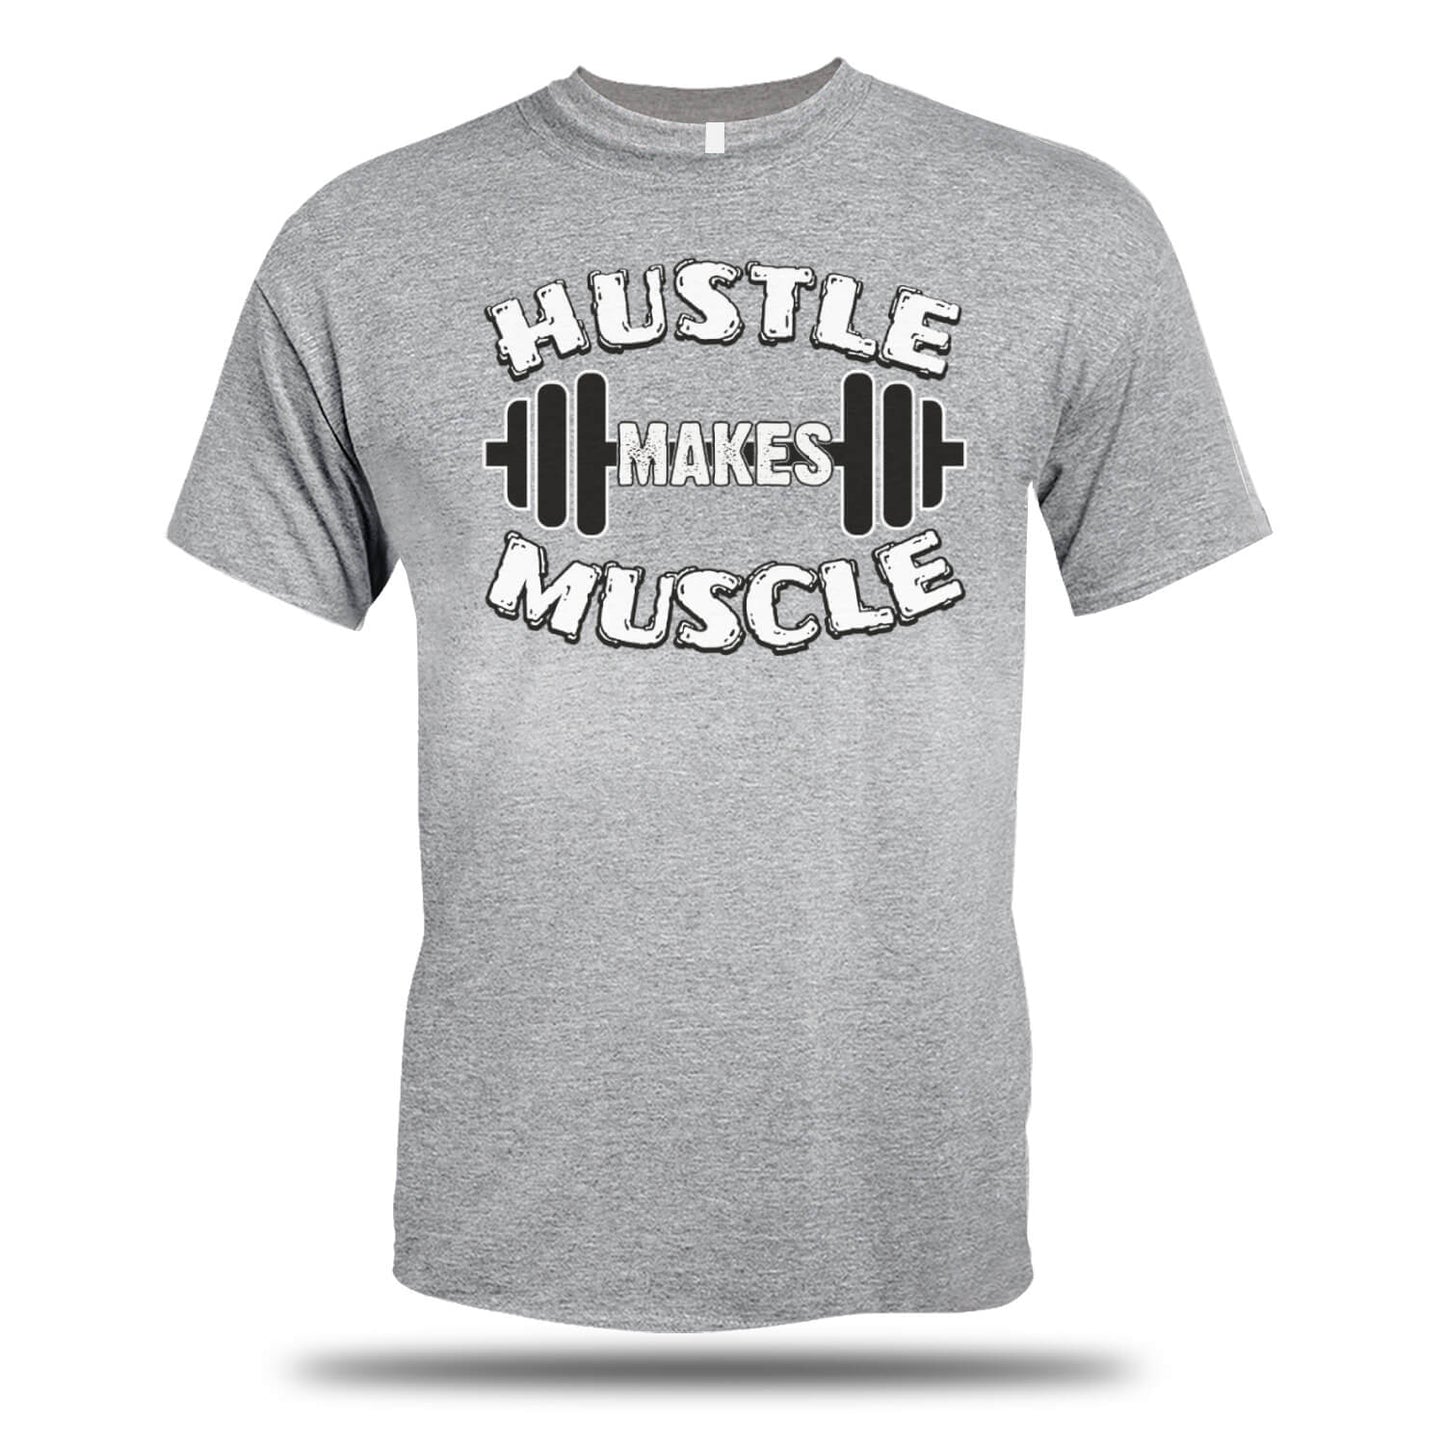 Hustle Makes Muscle